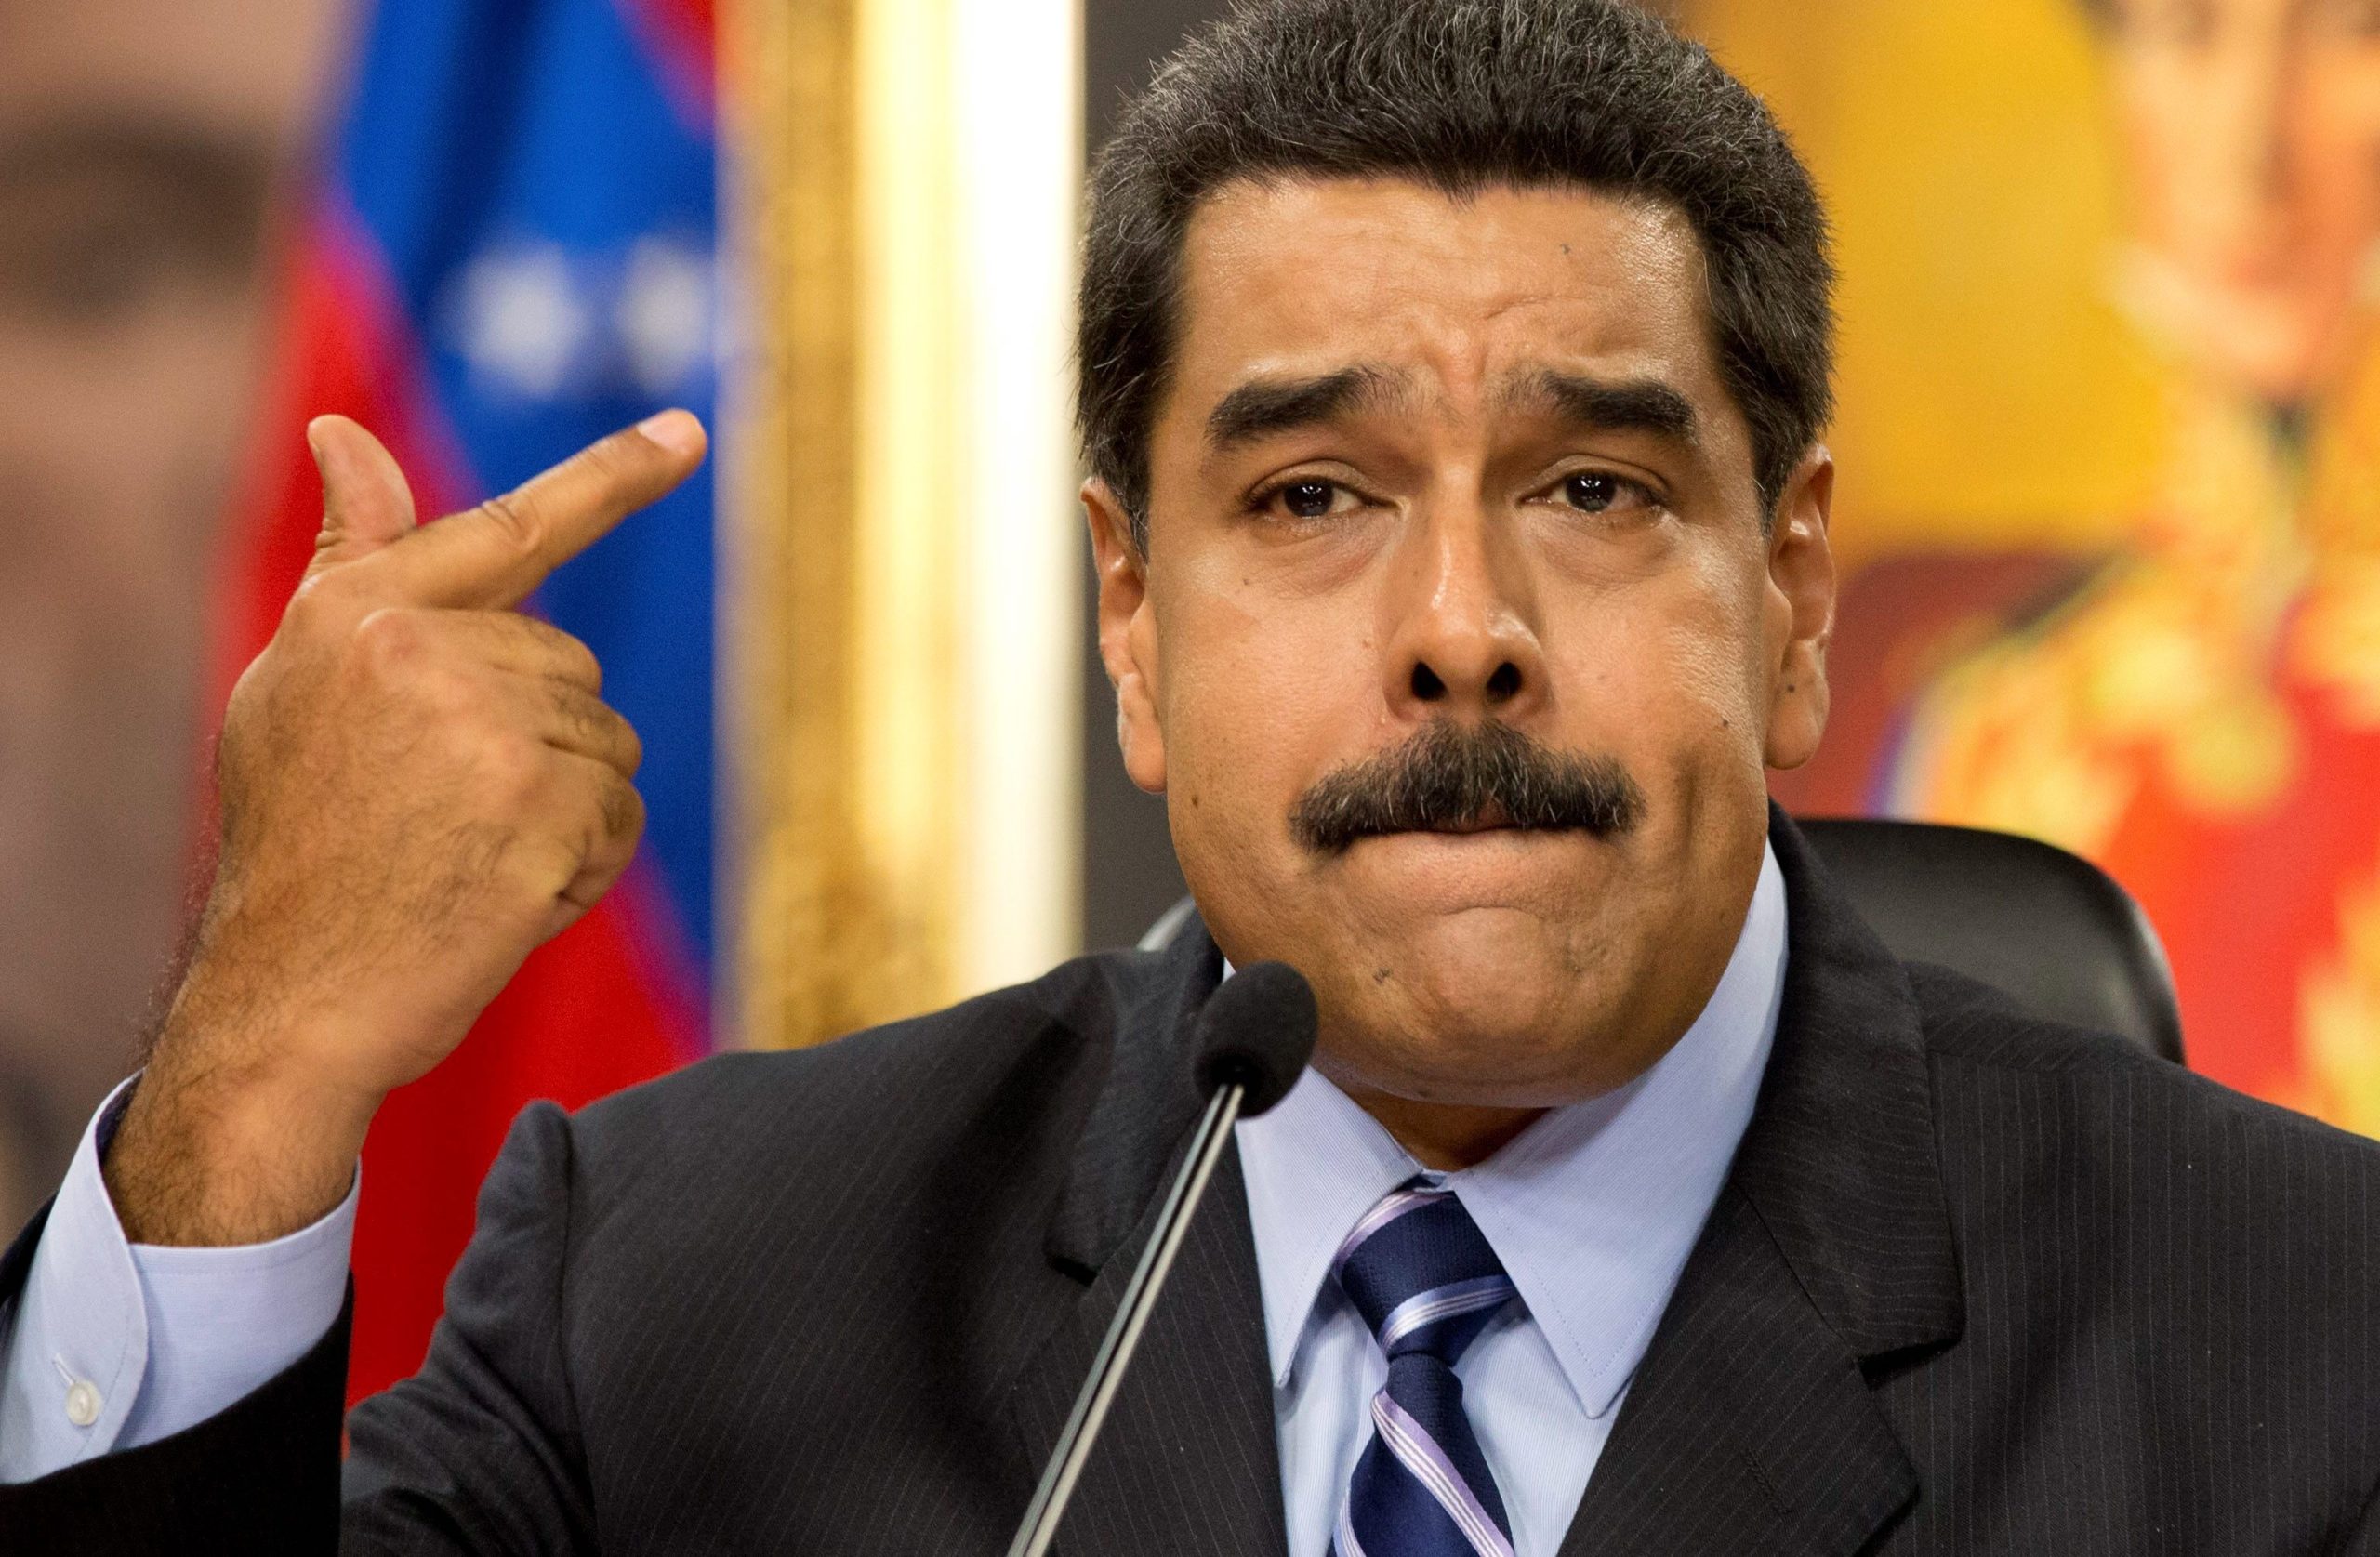 Ν.Μαδούρο σε Ντ.Τραμπ: «Απαιτώ τα 30 δισεκατομμύρια δολάρια που κλέψατε από τον λαό της Βενεζουέλας»